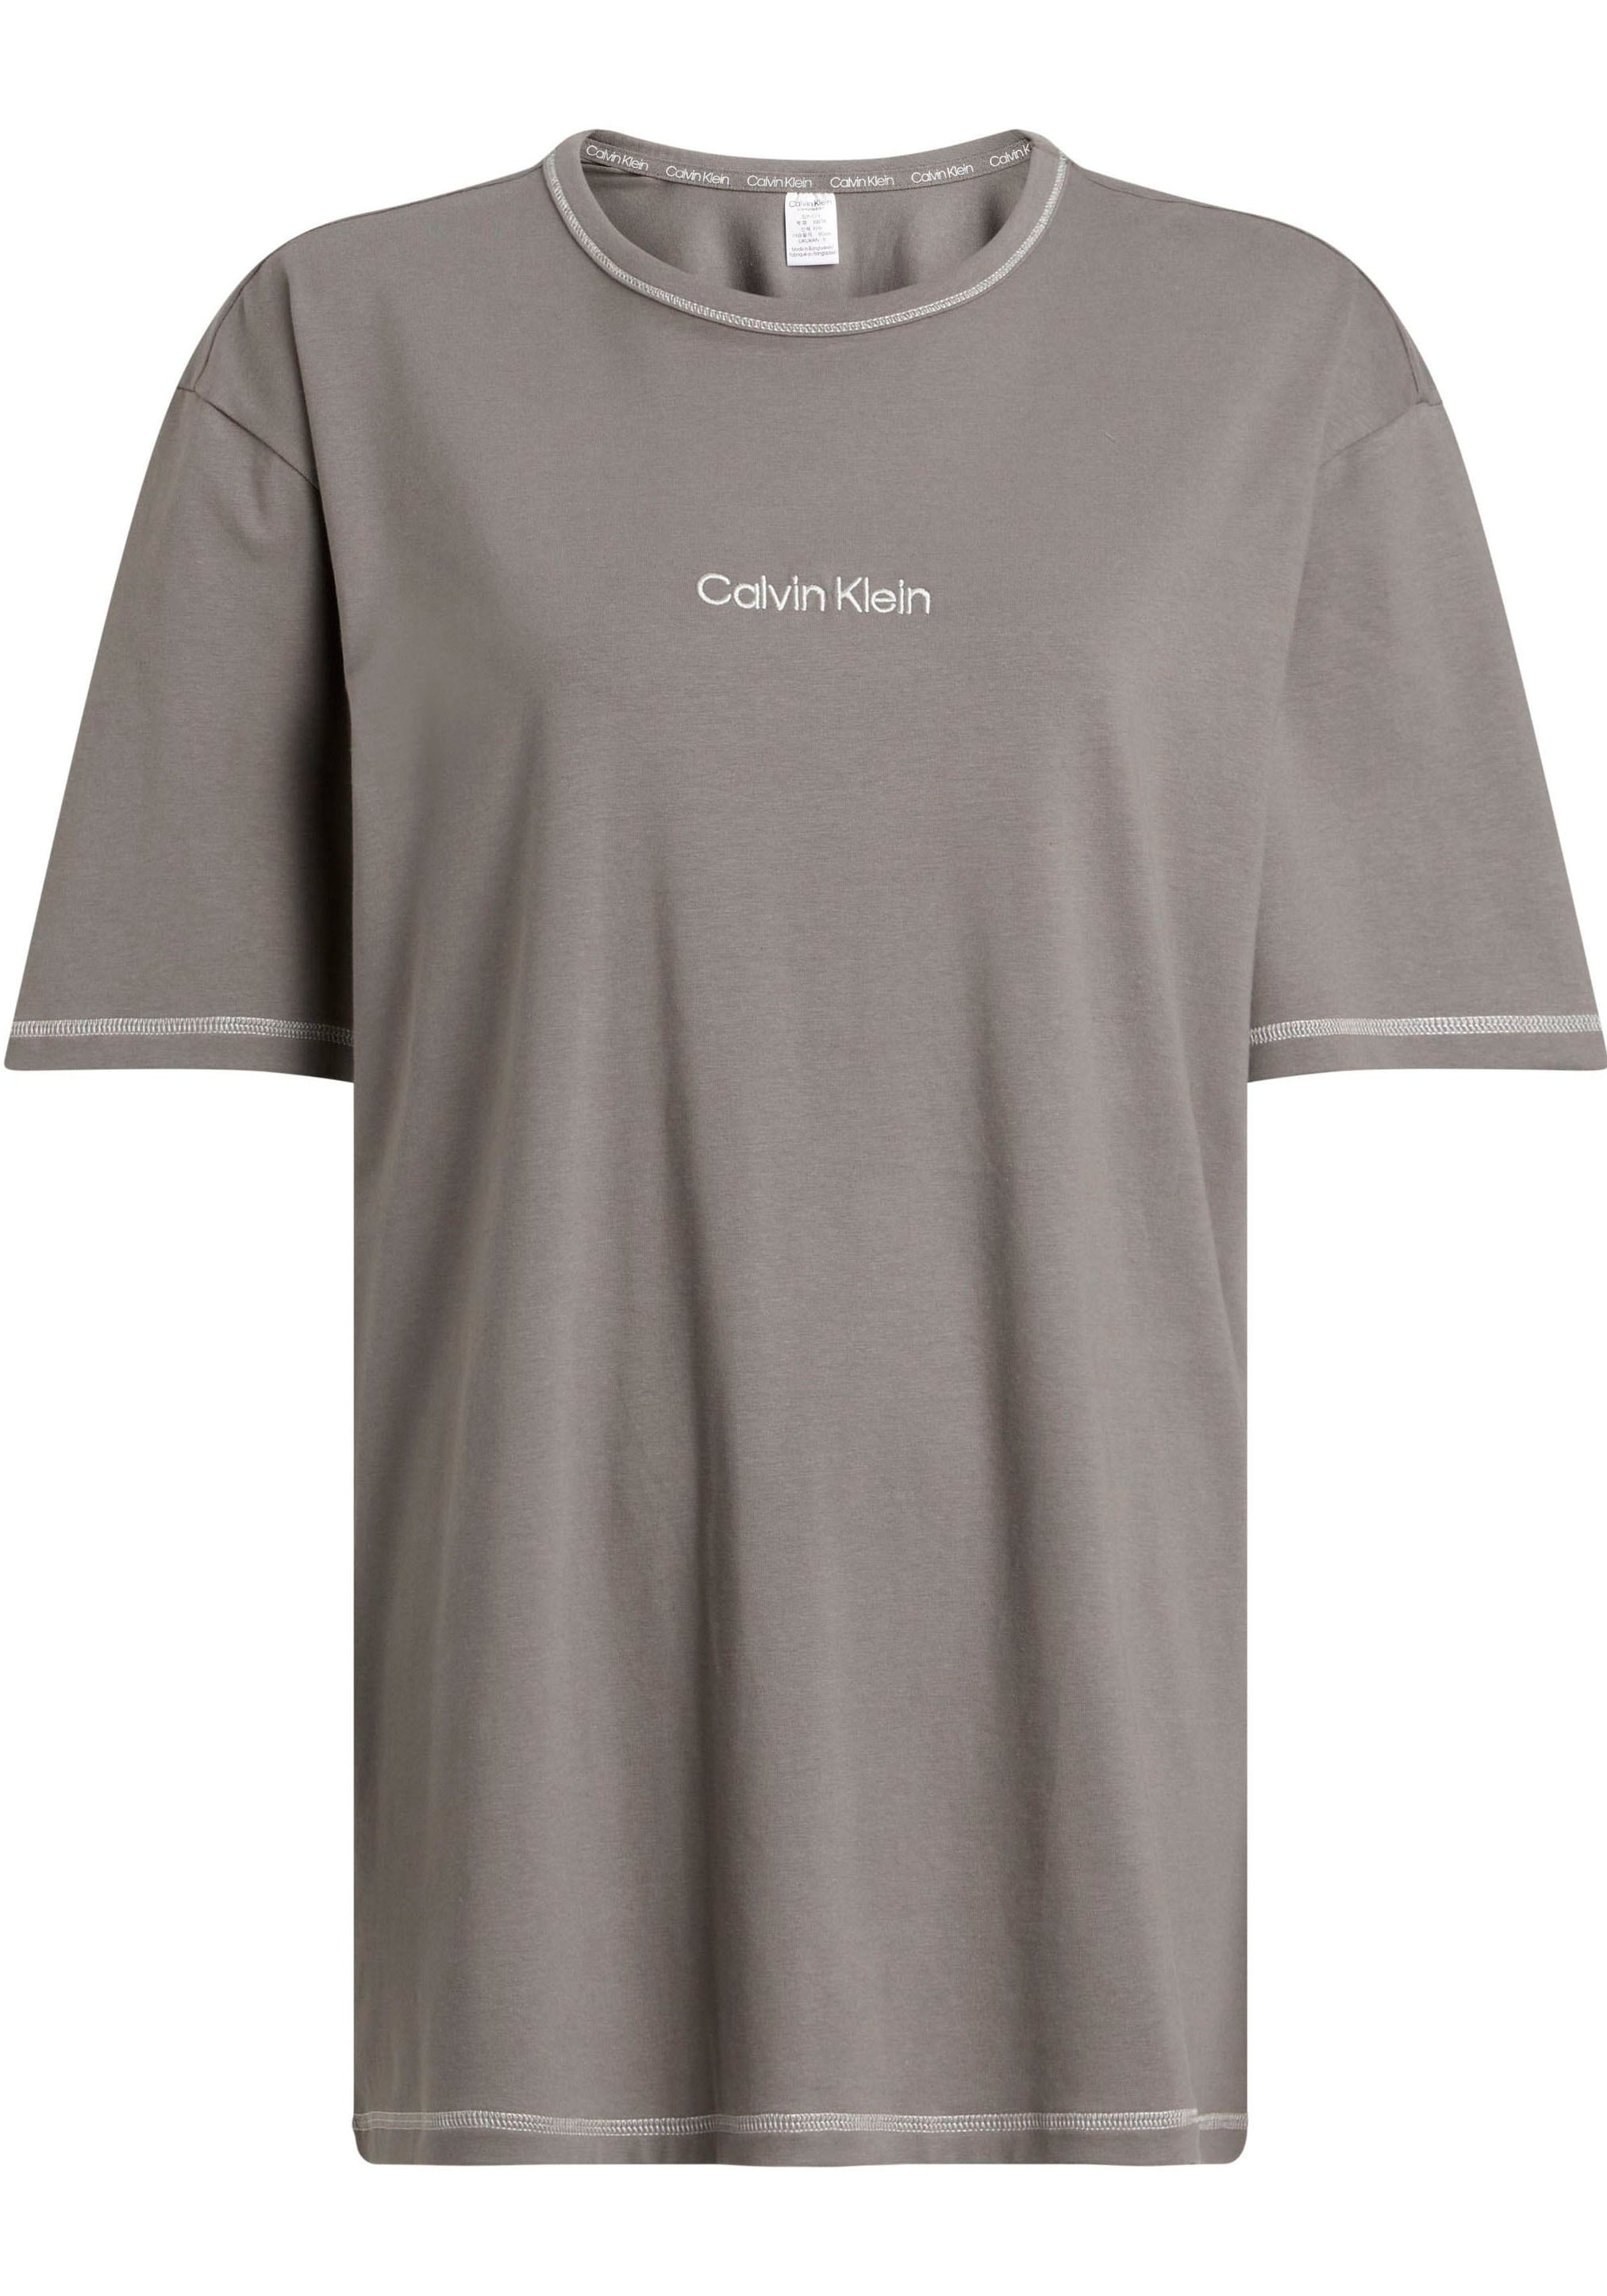 T-Shirt CREW mit bei Rundhalsausschnitt Klein Calvin ♕ »S/S NECK«,